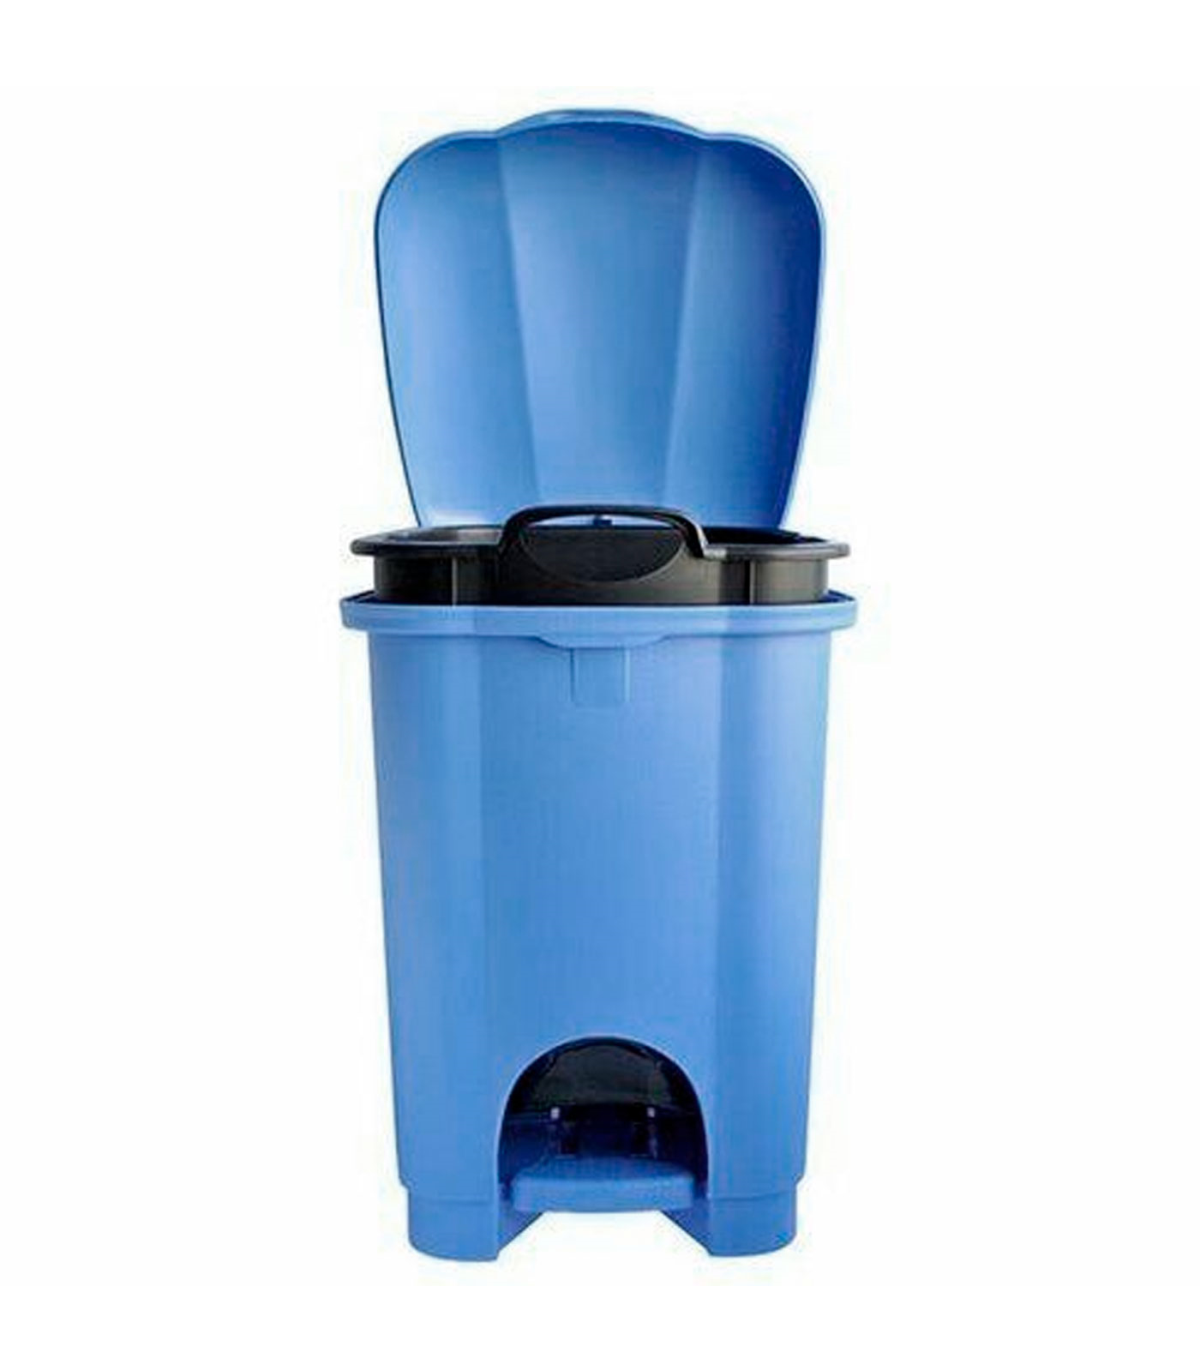 Tradineur - Cubo de basura con pedal, 1 compartimento, plástico, contenedor  de residuos, papelera, cocina, fabricado en España (